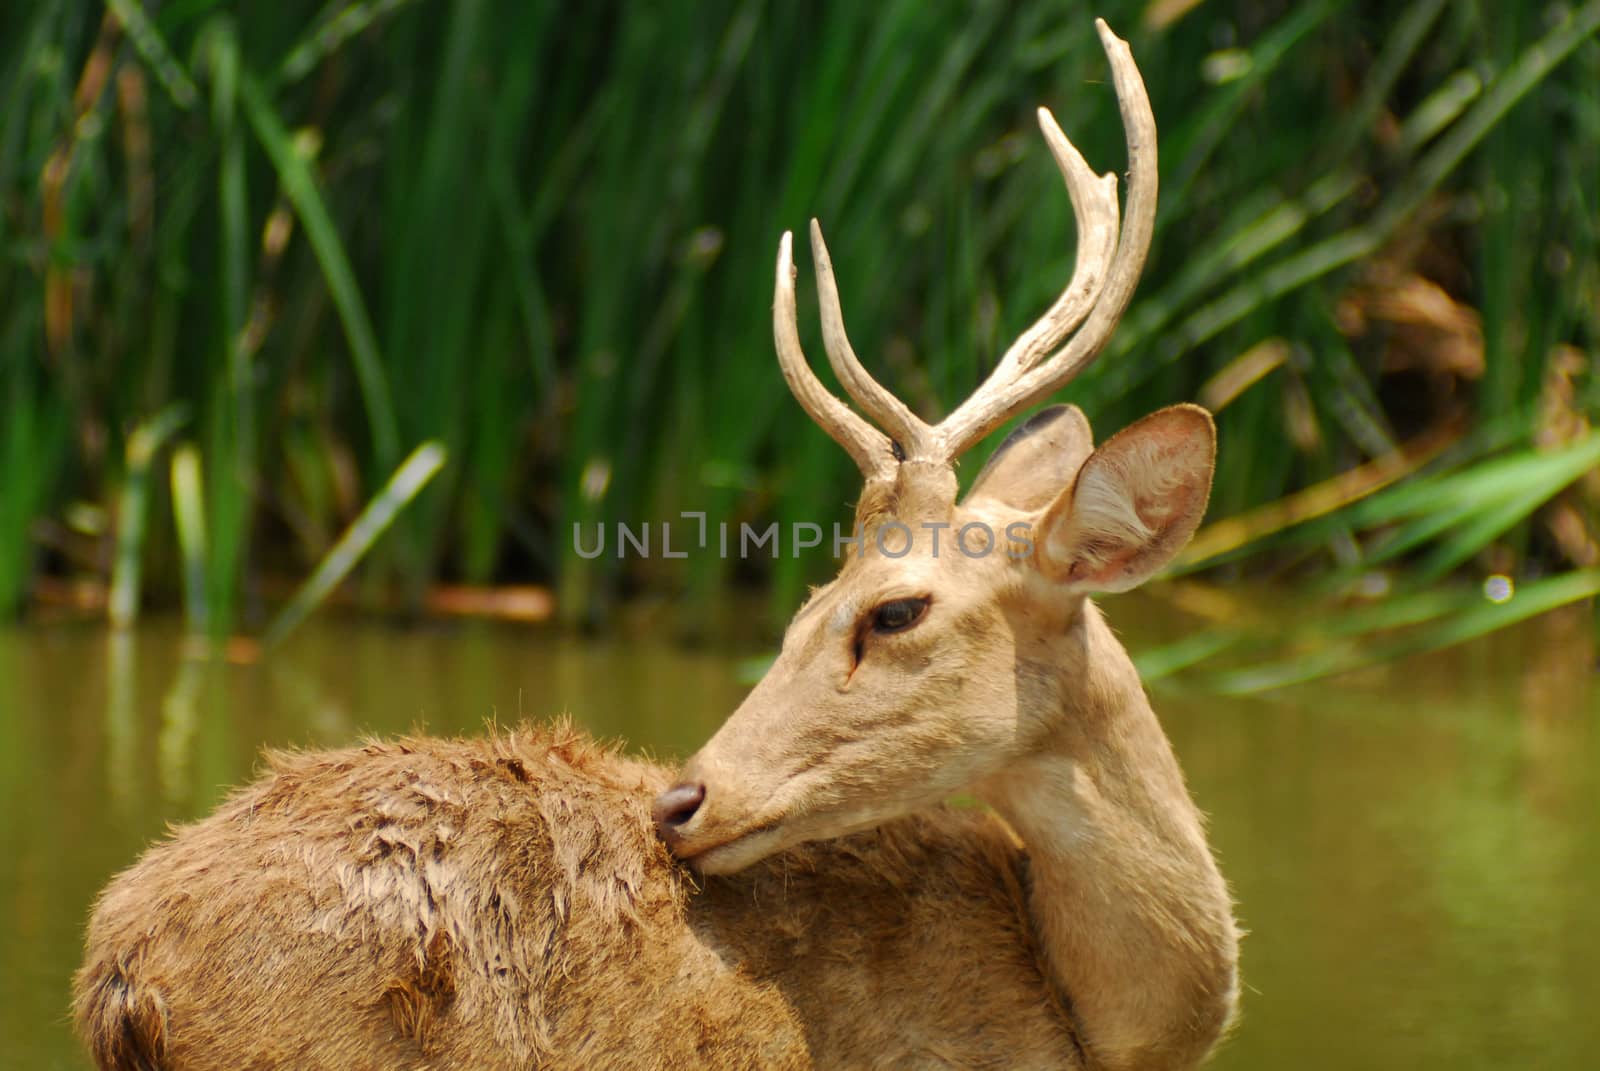 Siamese Eld's deers by think4photop